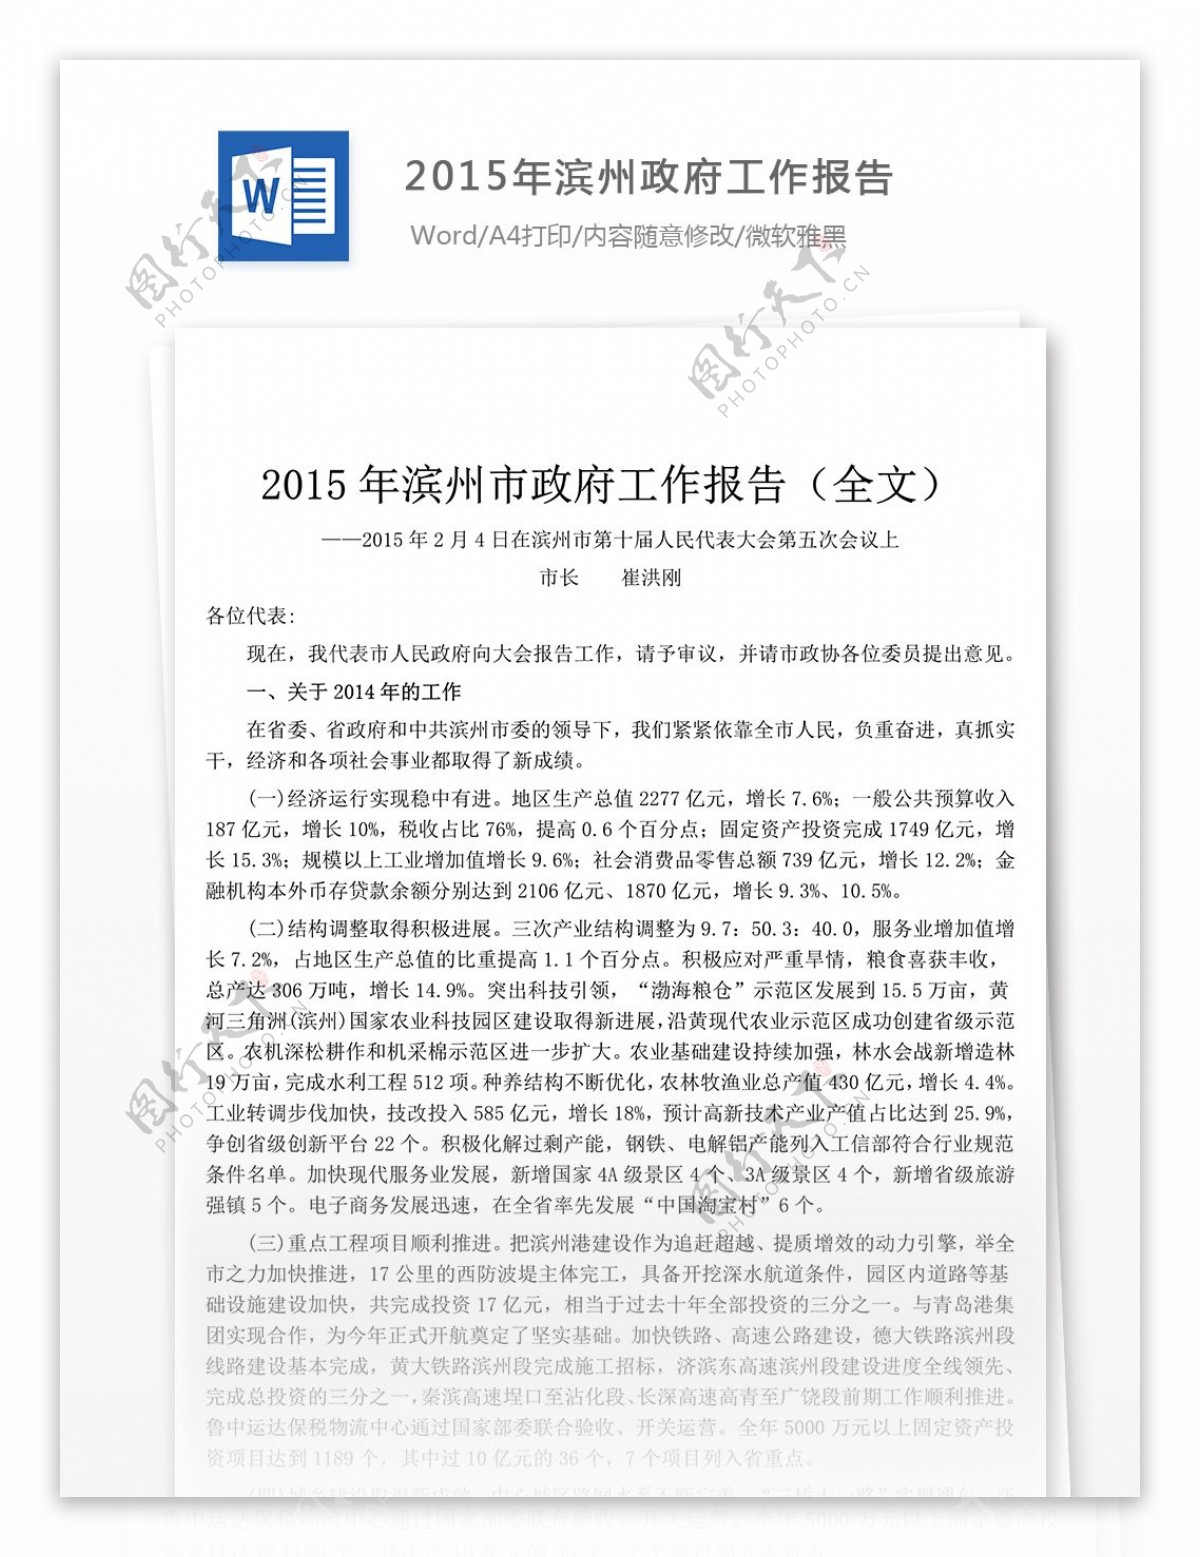 2015年滨州政府工作报告范文公文